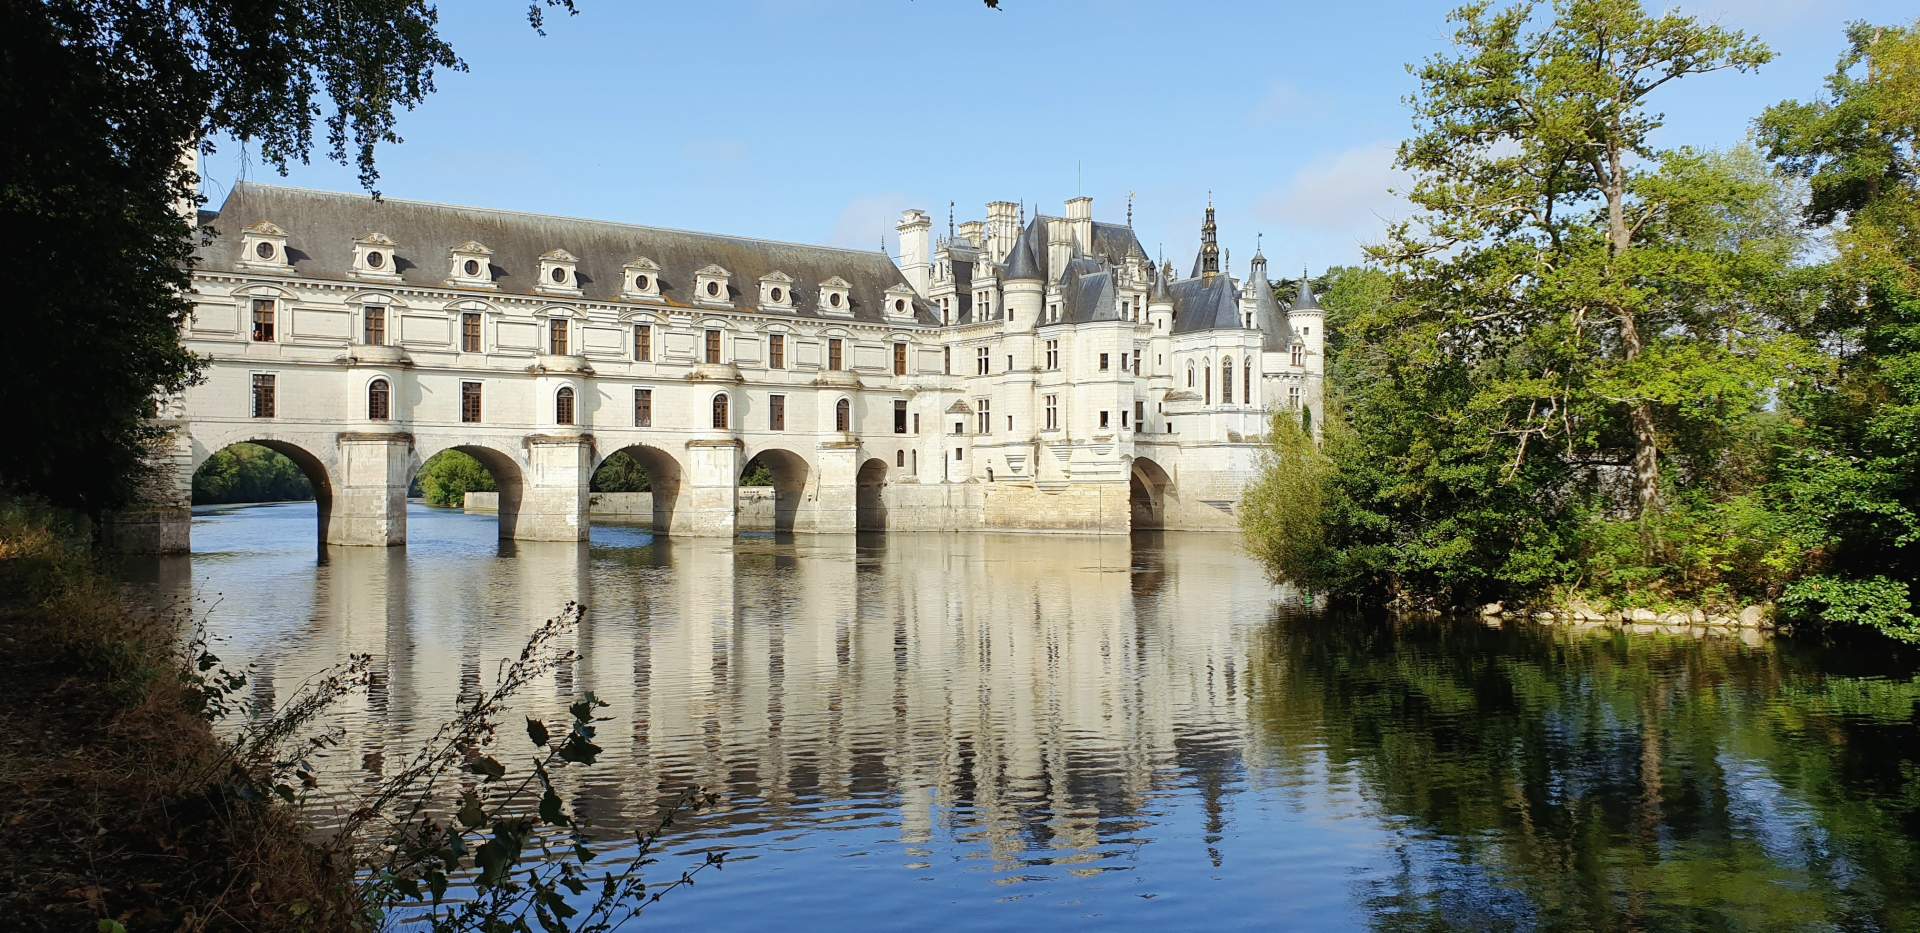 Busreis Loire Château de Chenonceau ©JEROME CLARYSSE from Pixabay